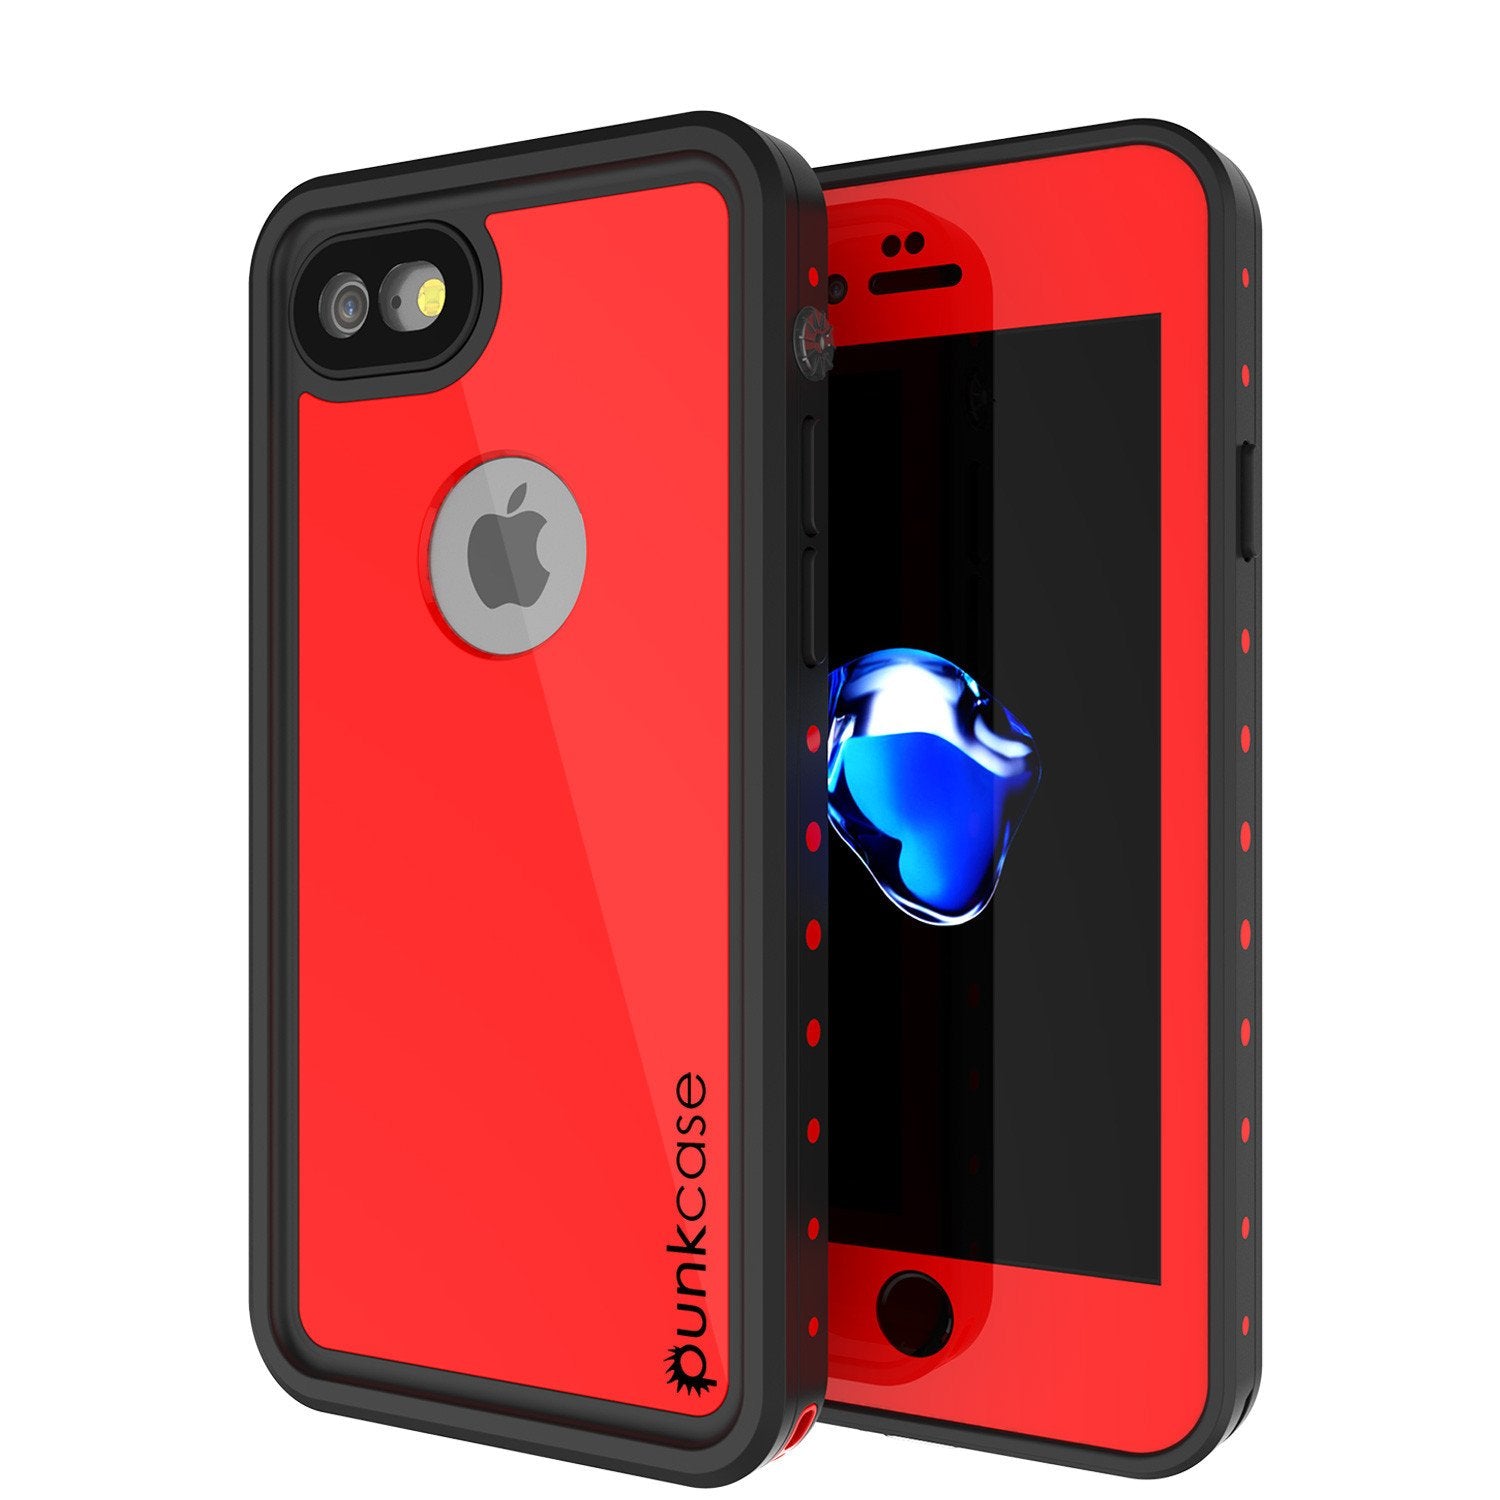 iPhone 7 Waterproof Case, Punkcase [Red] [StudStar Series] [Slim Fit] [IP68 Certified] [Shockproof] [Dirtproof] [Snowproof] Armor Cover for Apple iPhone 7 & 7s